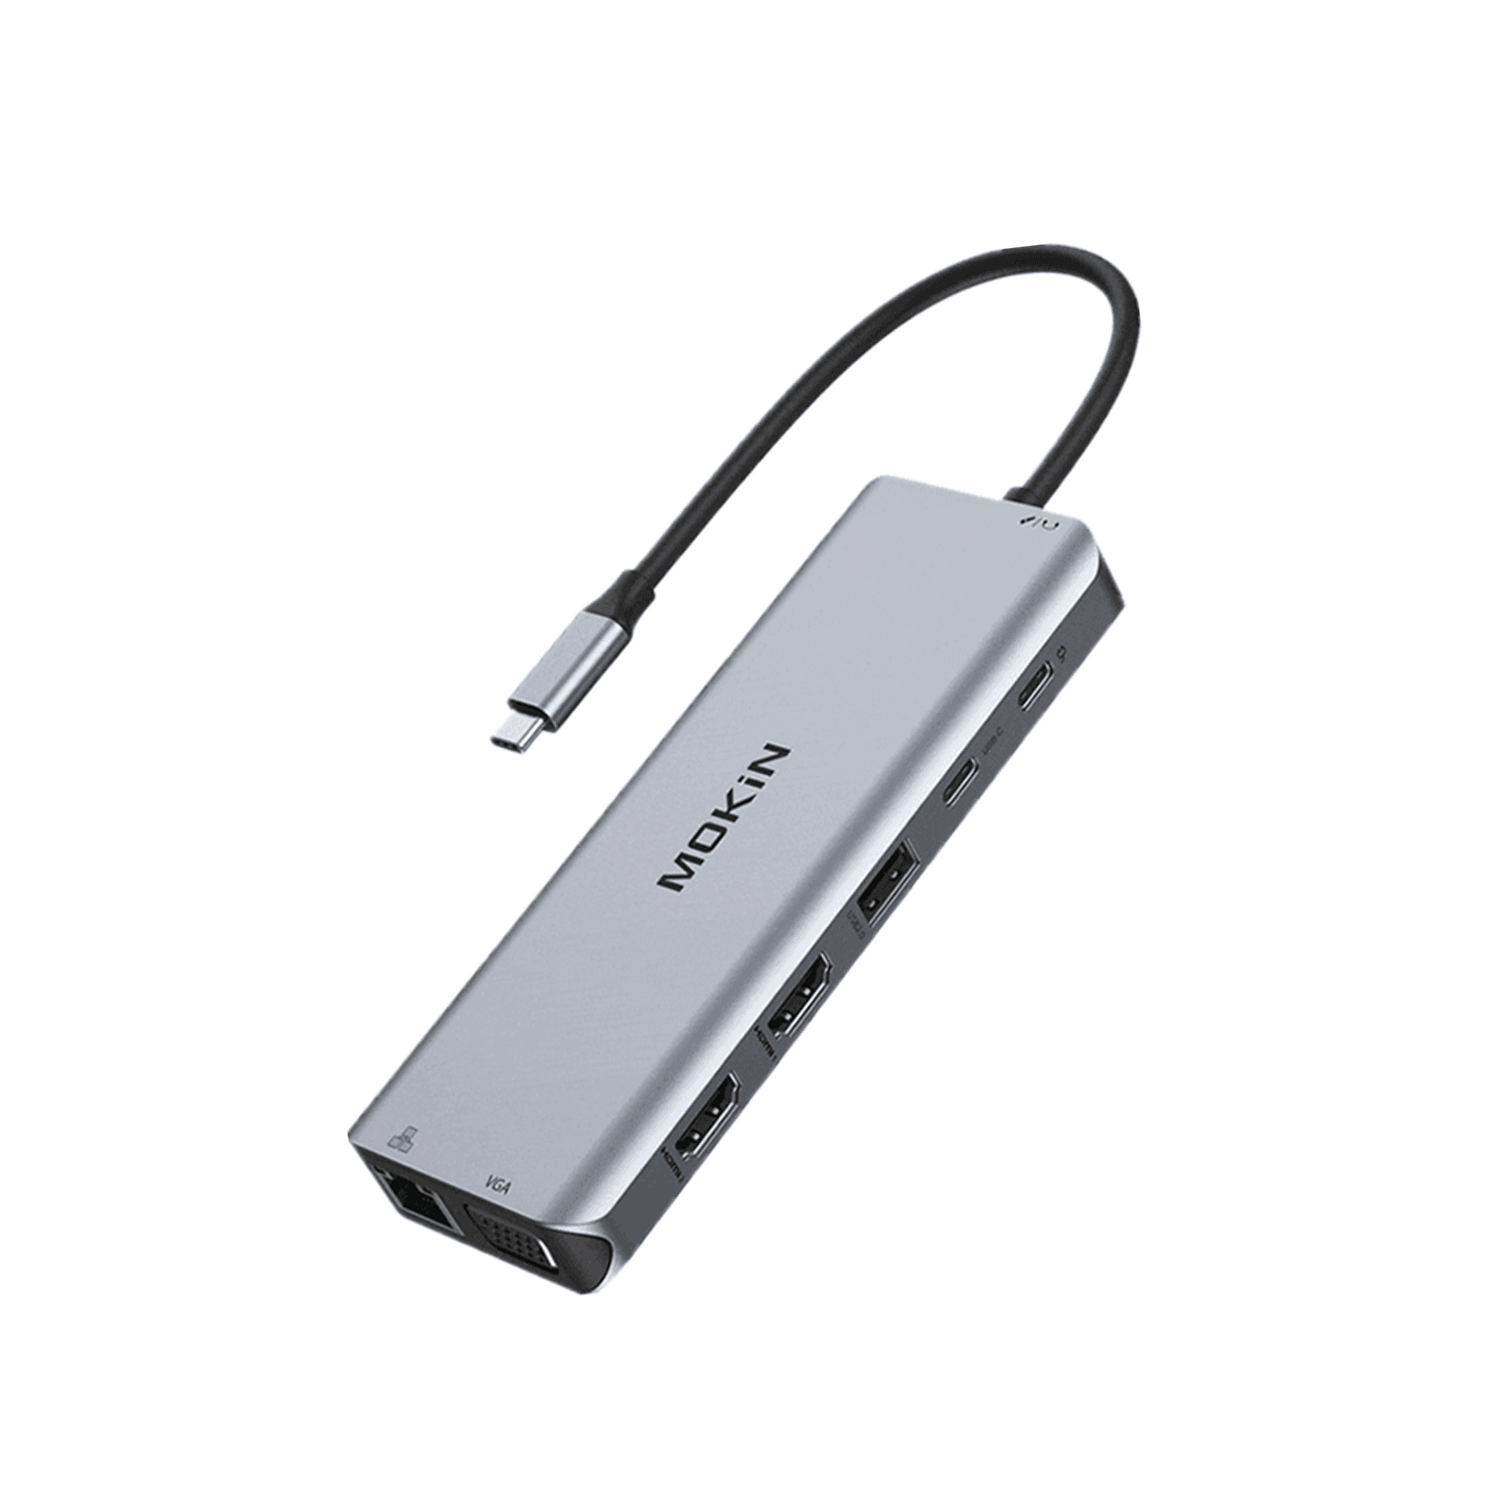 Utilisez l'adaptateur USB-C vers Ethernet et USB 3.0 pour Surface